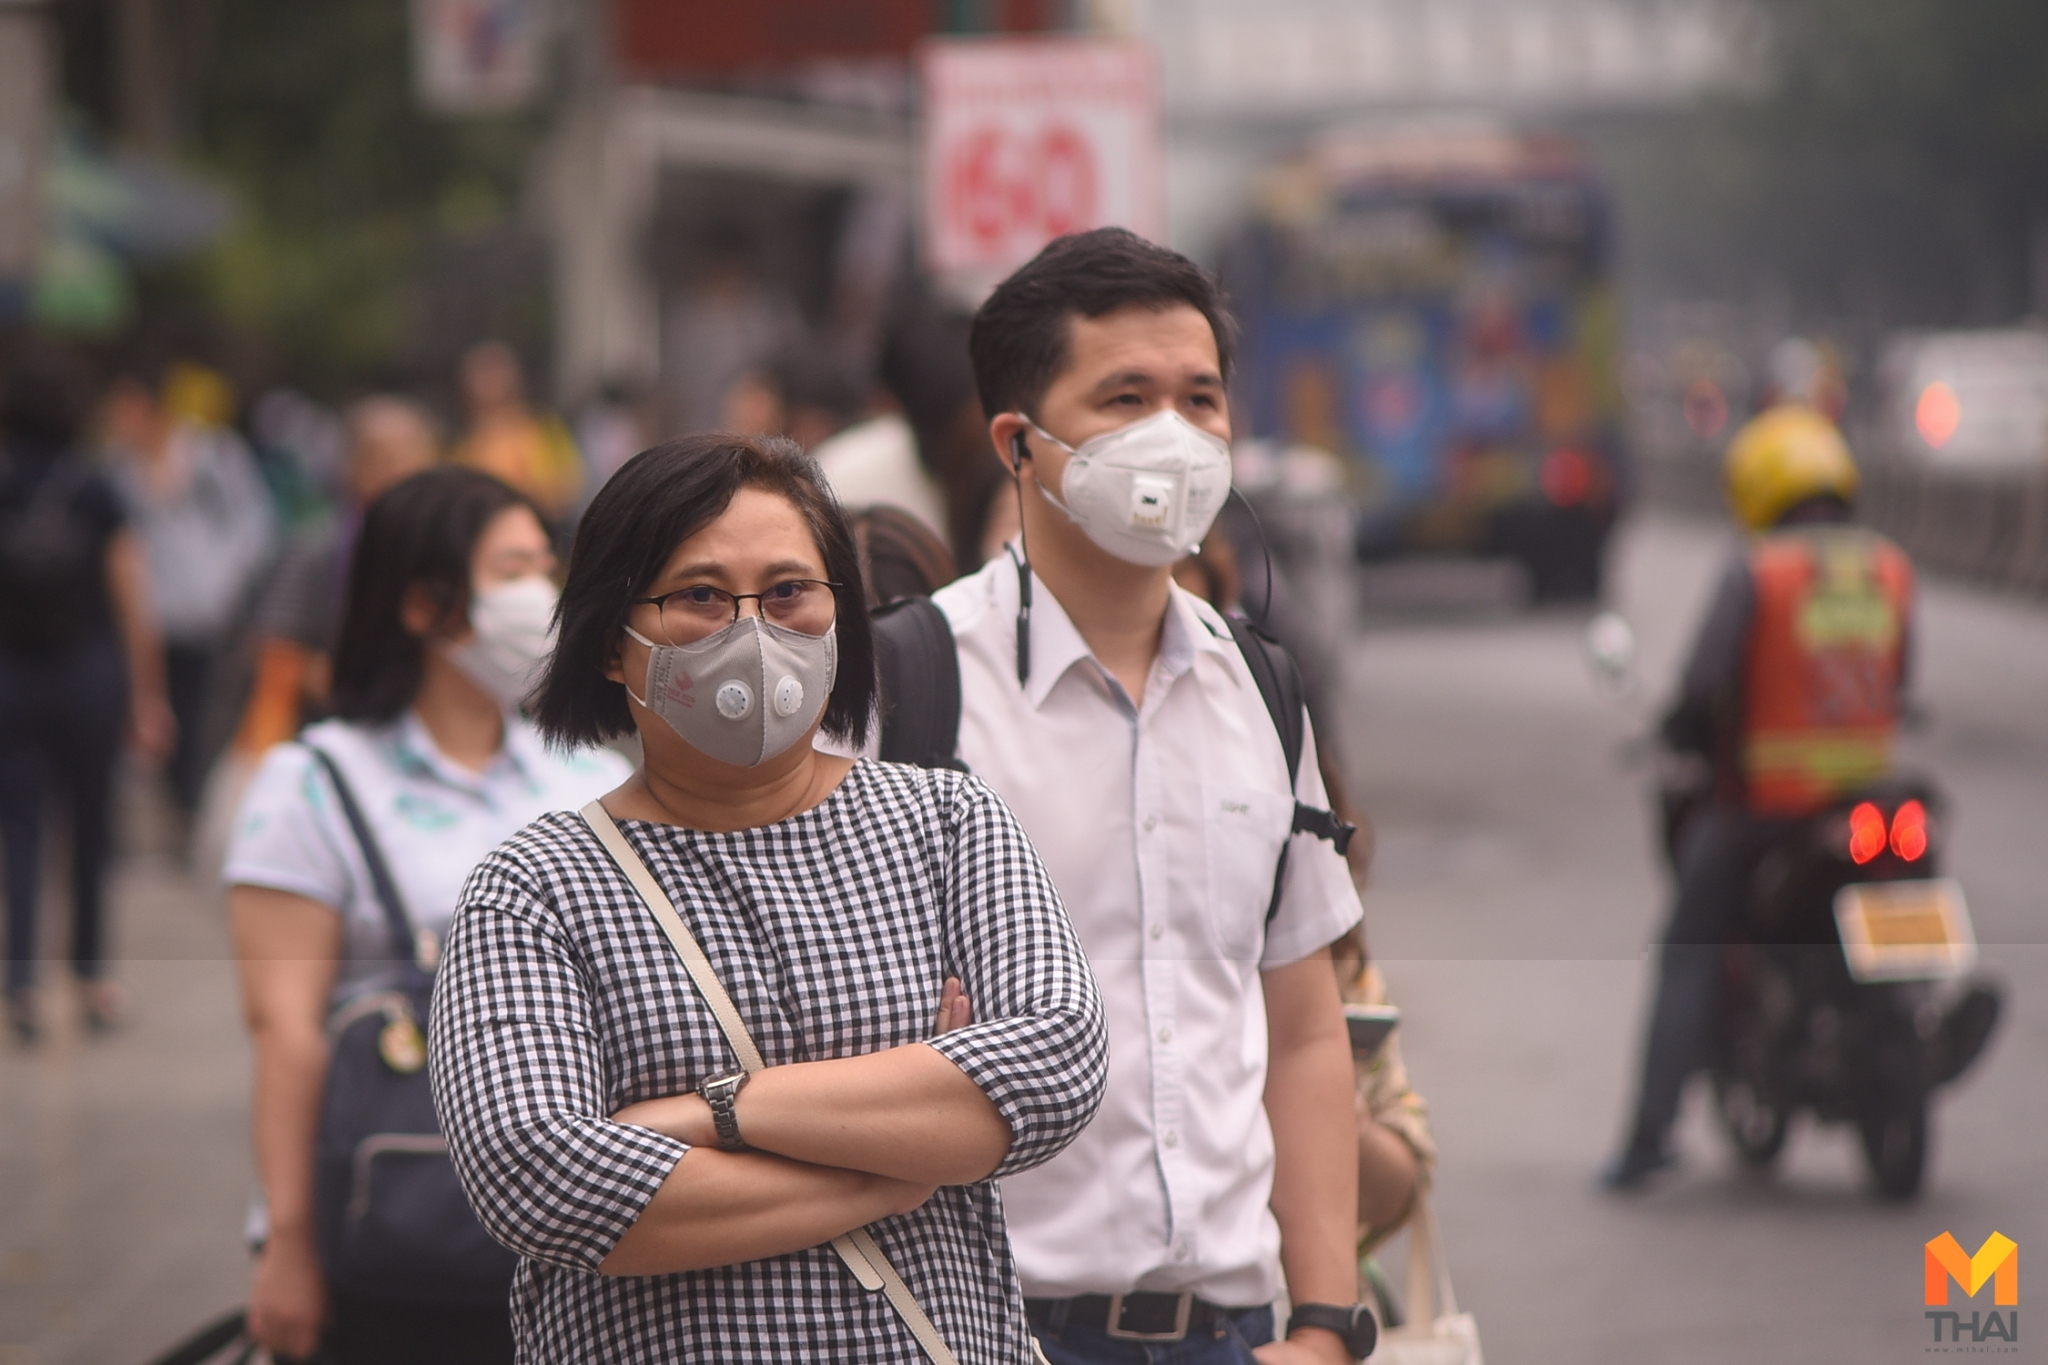 ข่าวนายกรัฐมนตรี ฝุ่น PM 2.5 ฝุ่นพิษ PM2.5